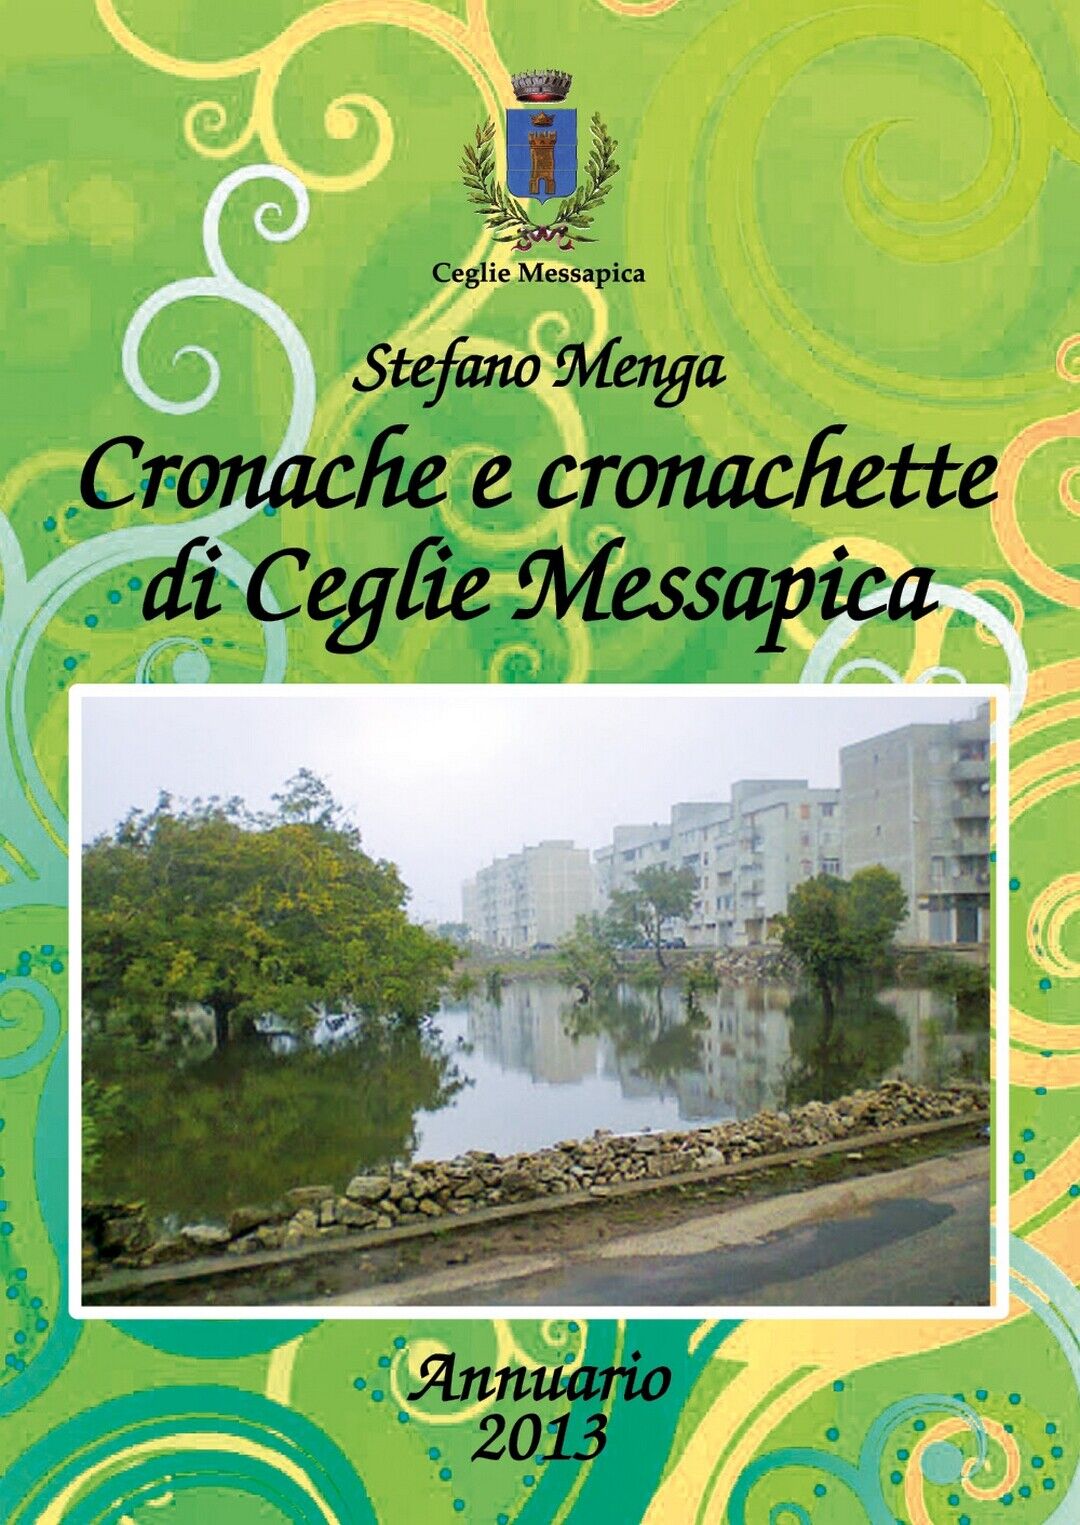 Cronache e cronachette di Ceglie Messapica - Annuario 2013  di Stefano Menga libro usato